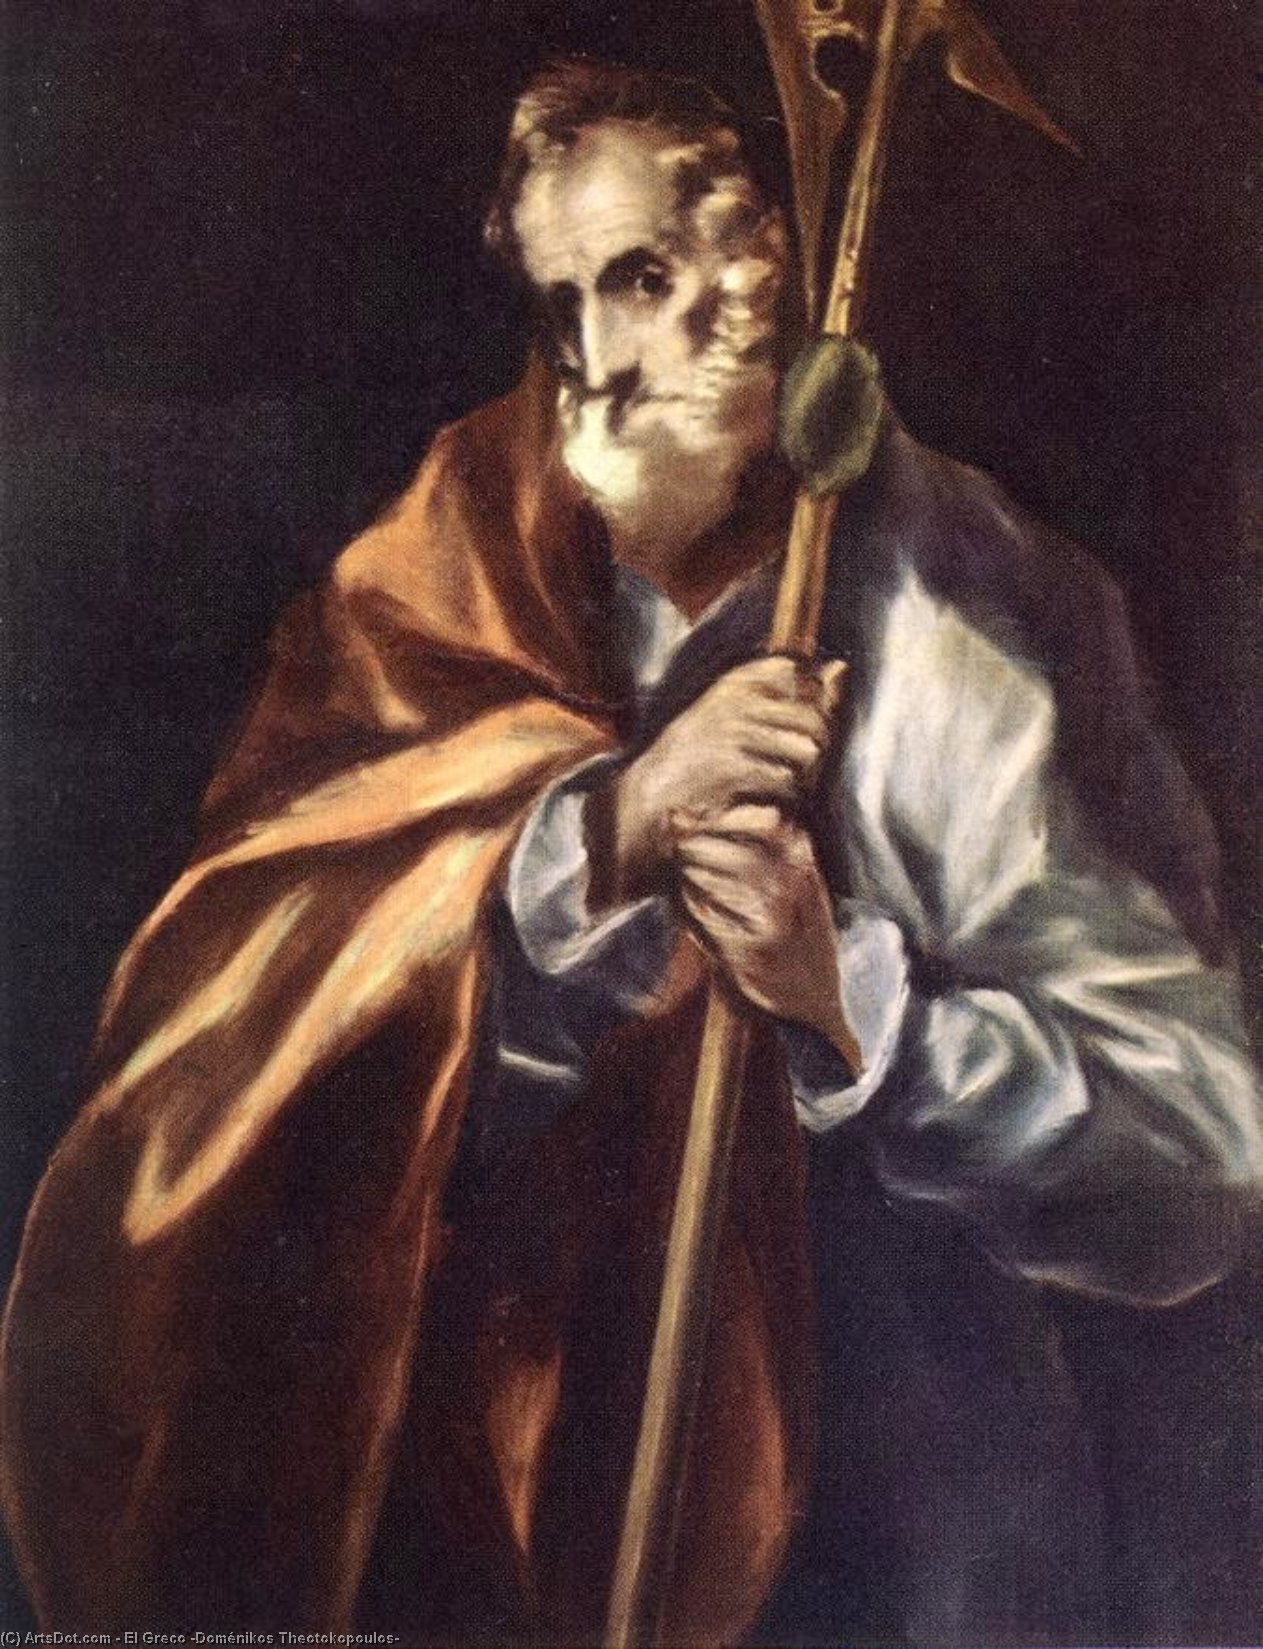 WikiOO.org - Encyclopedia of Fine Arts - Festés, Grafika El Greco (Doménikos Theotokopoulos) - Apostle St Thaddeus (Jude)